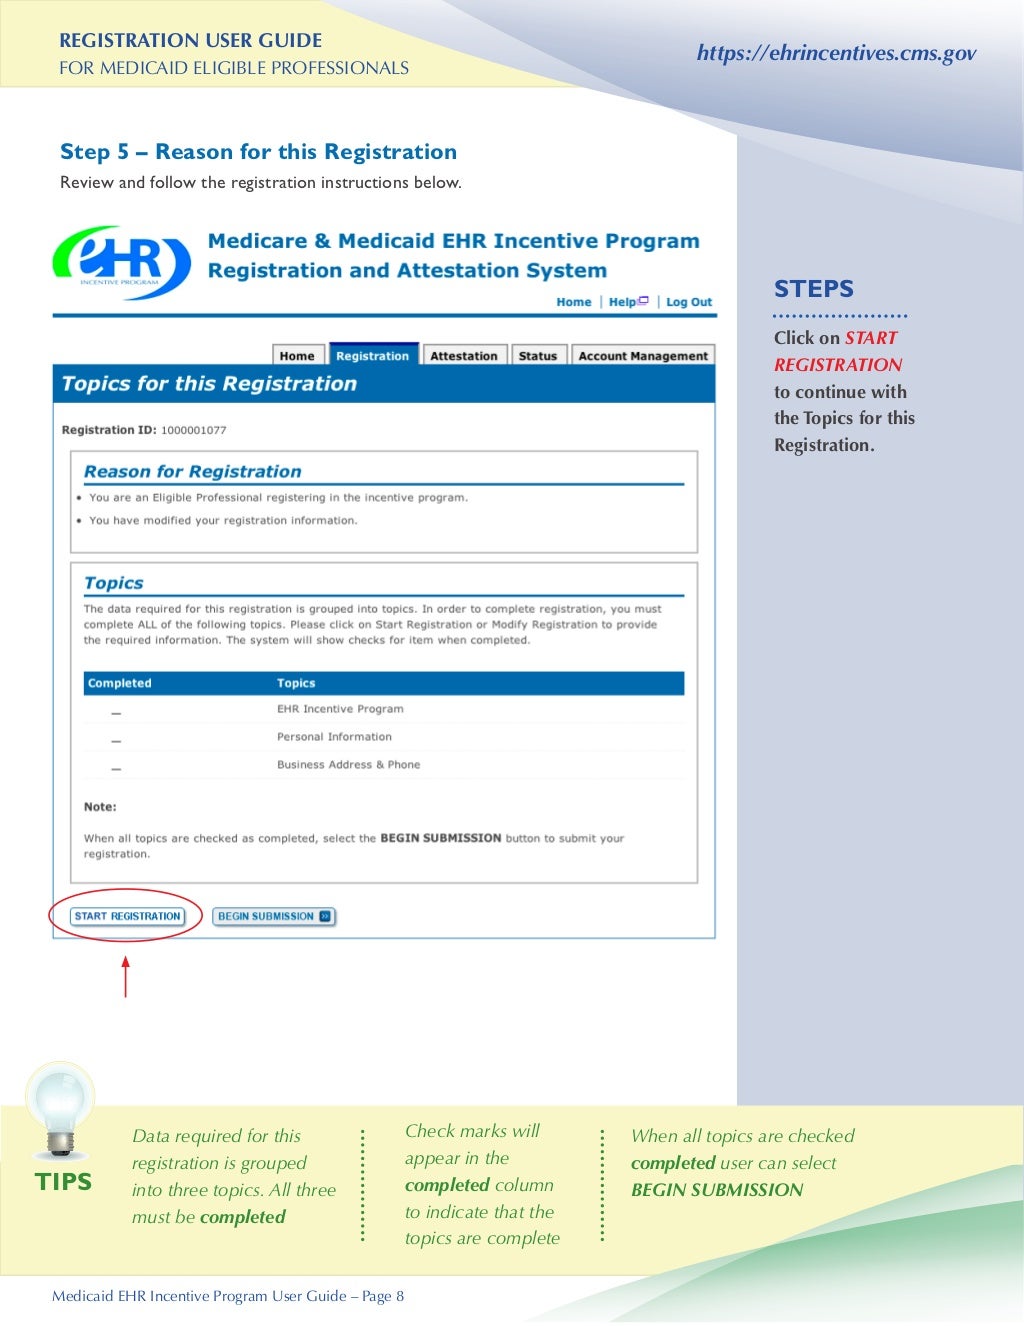 medicaid-ehr-incentive-program-registration-user-guide-for-eligible-p